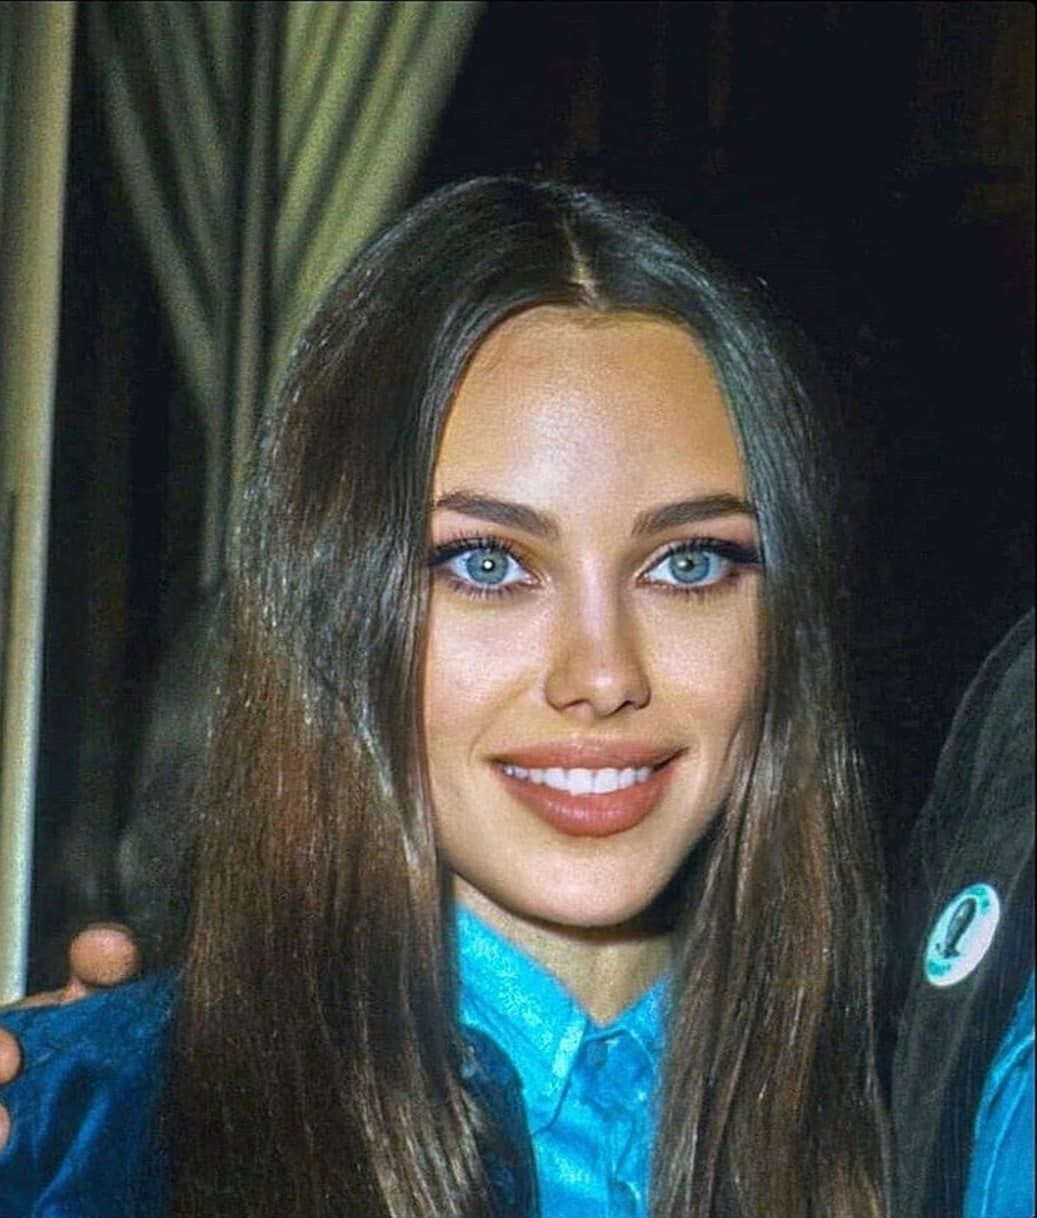 Bộ gen cần được bảo tồn nhà Angelina Jolie: Mẹ đẹp tựa nữ thần, con gái dậy thì thành thiên thần, kéo đến mẹ ruột mà choáng - Ảnh 10.